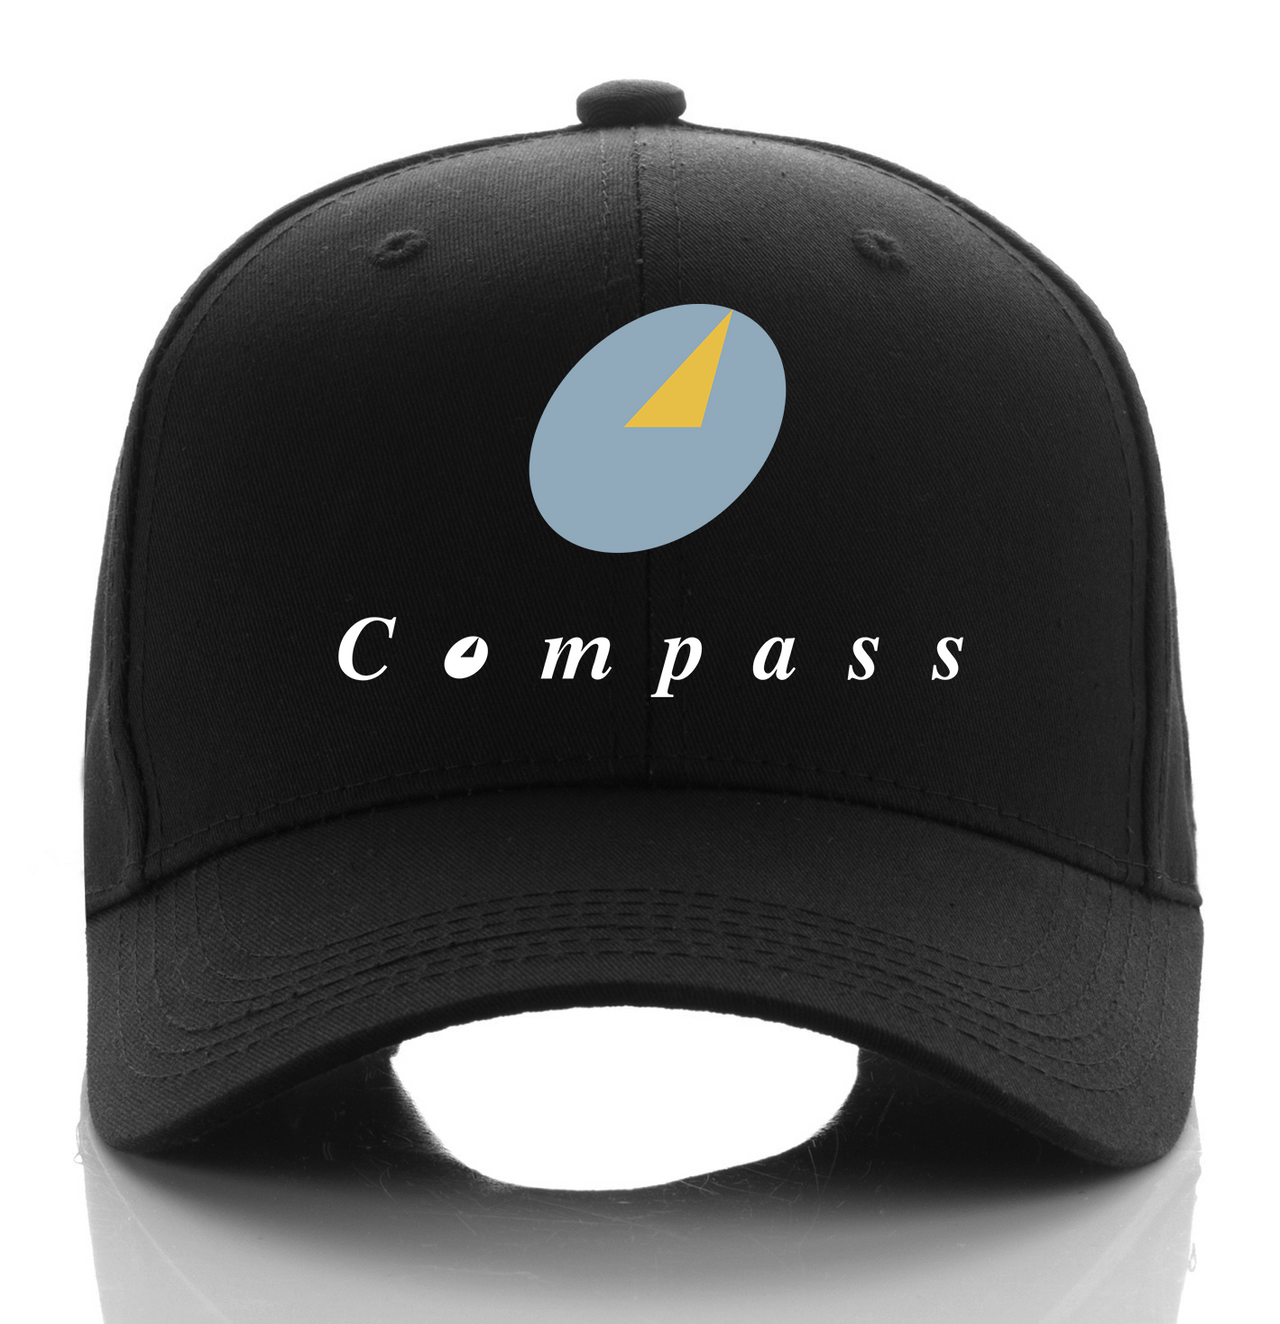 COMPASS AIRLINE DESIGNED CAP